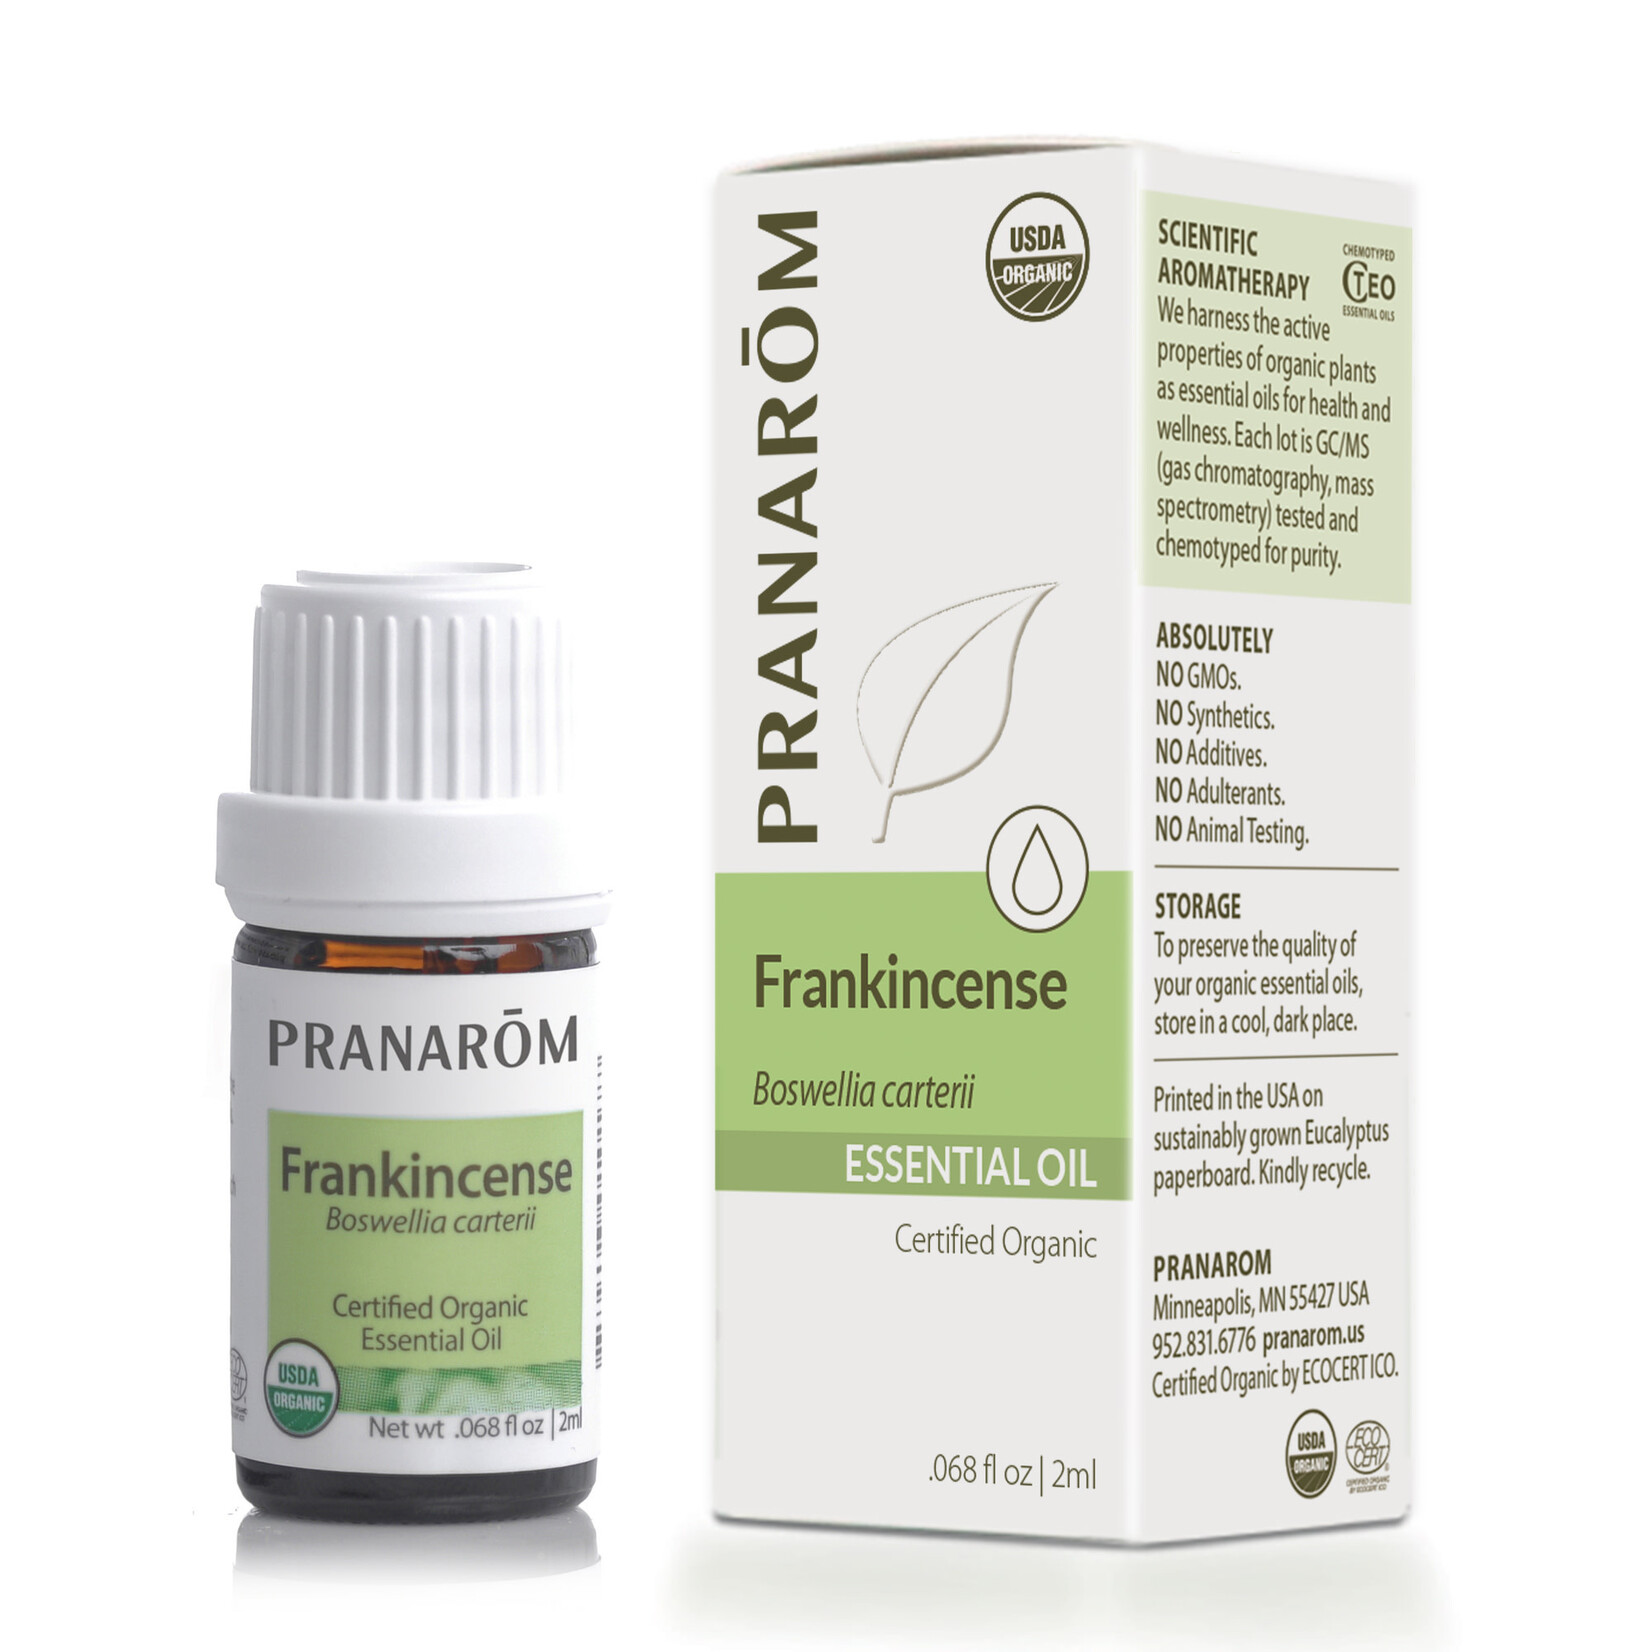 Pranarom Frankincense Oil 2ml